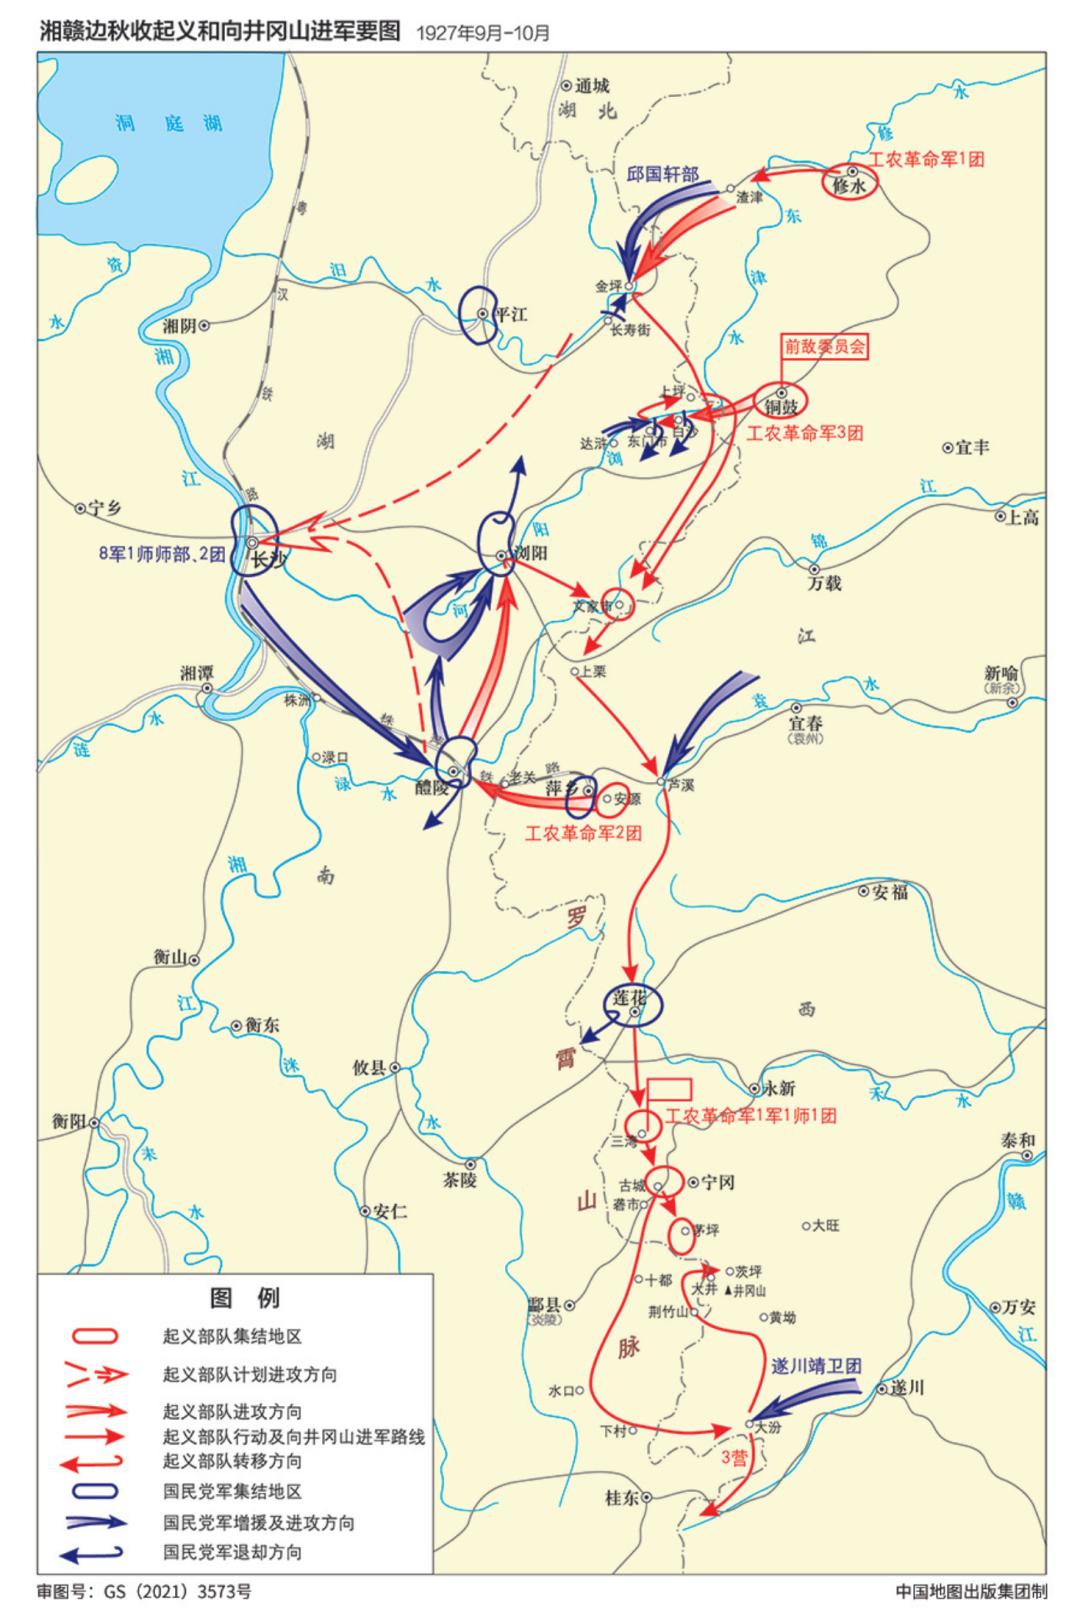 湘赣边秋收起义和向井冈山进军要图描述:南昌起义胜利后,起义部队按照